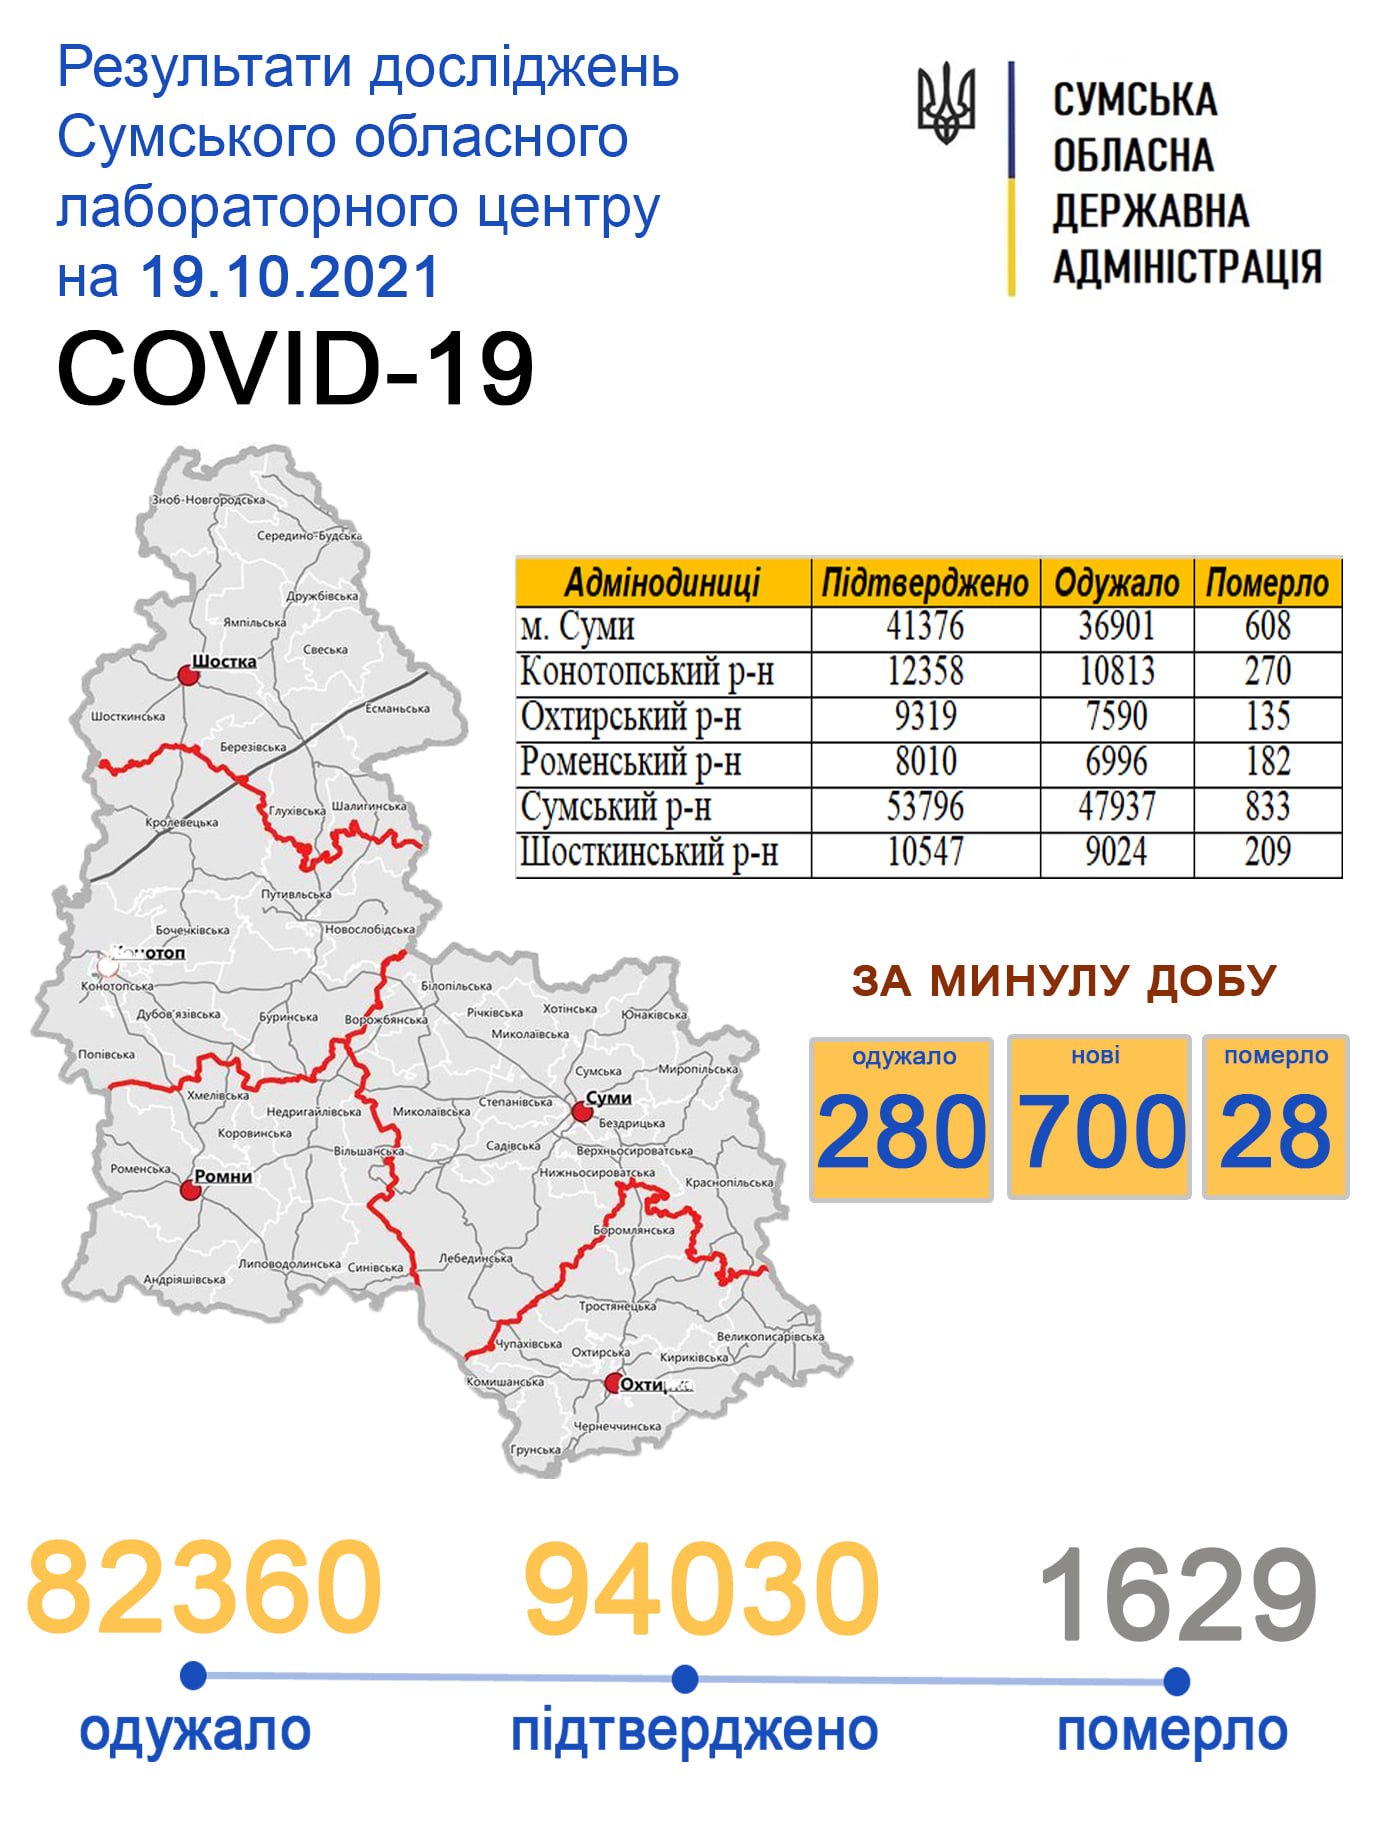    covid-19  700   